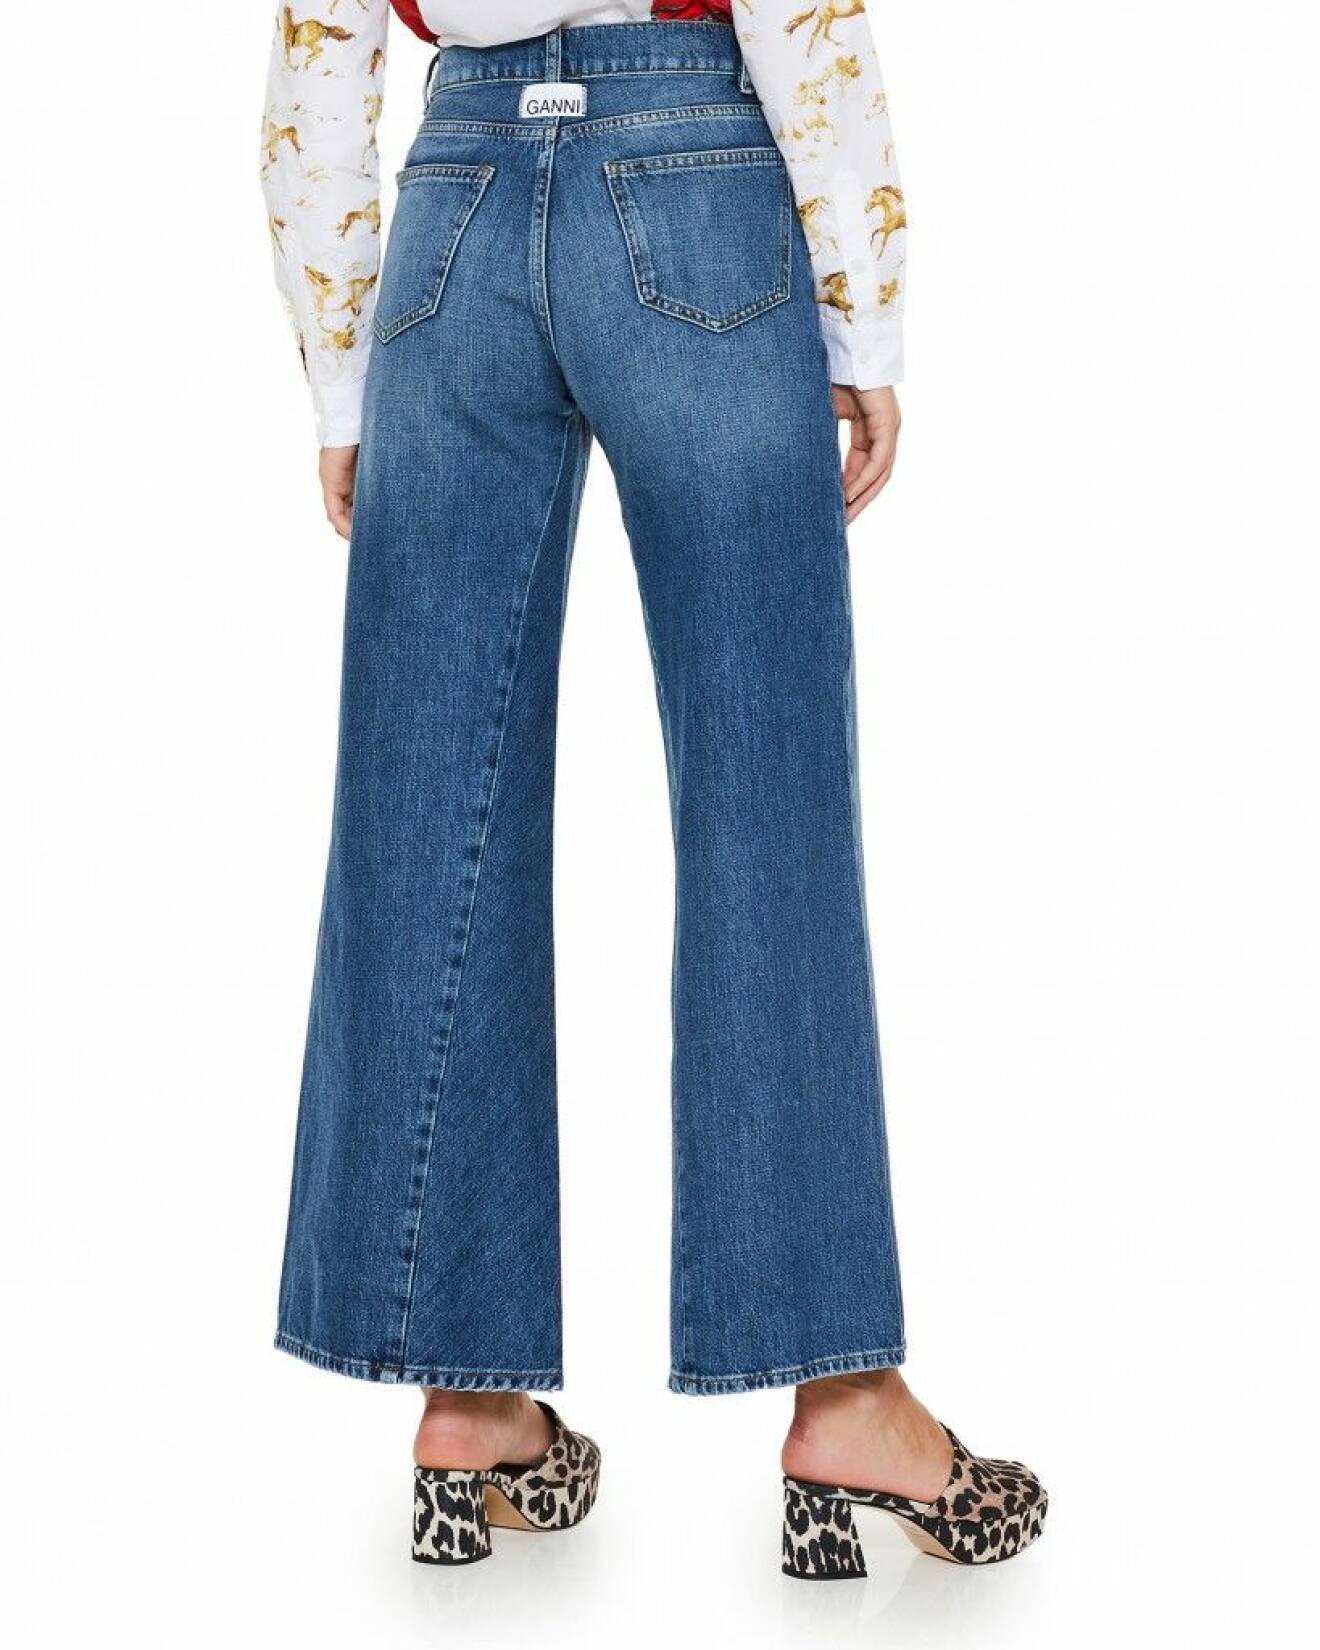 Trendiga jeans i en avslappnat utsvängd modell från Ganni.